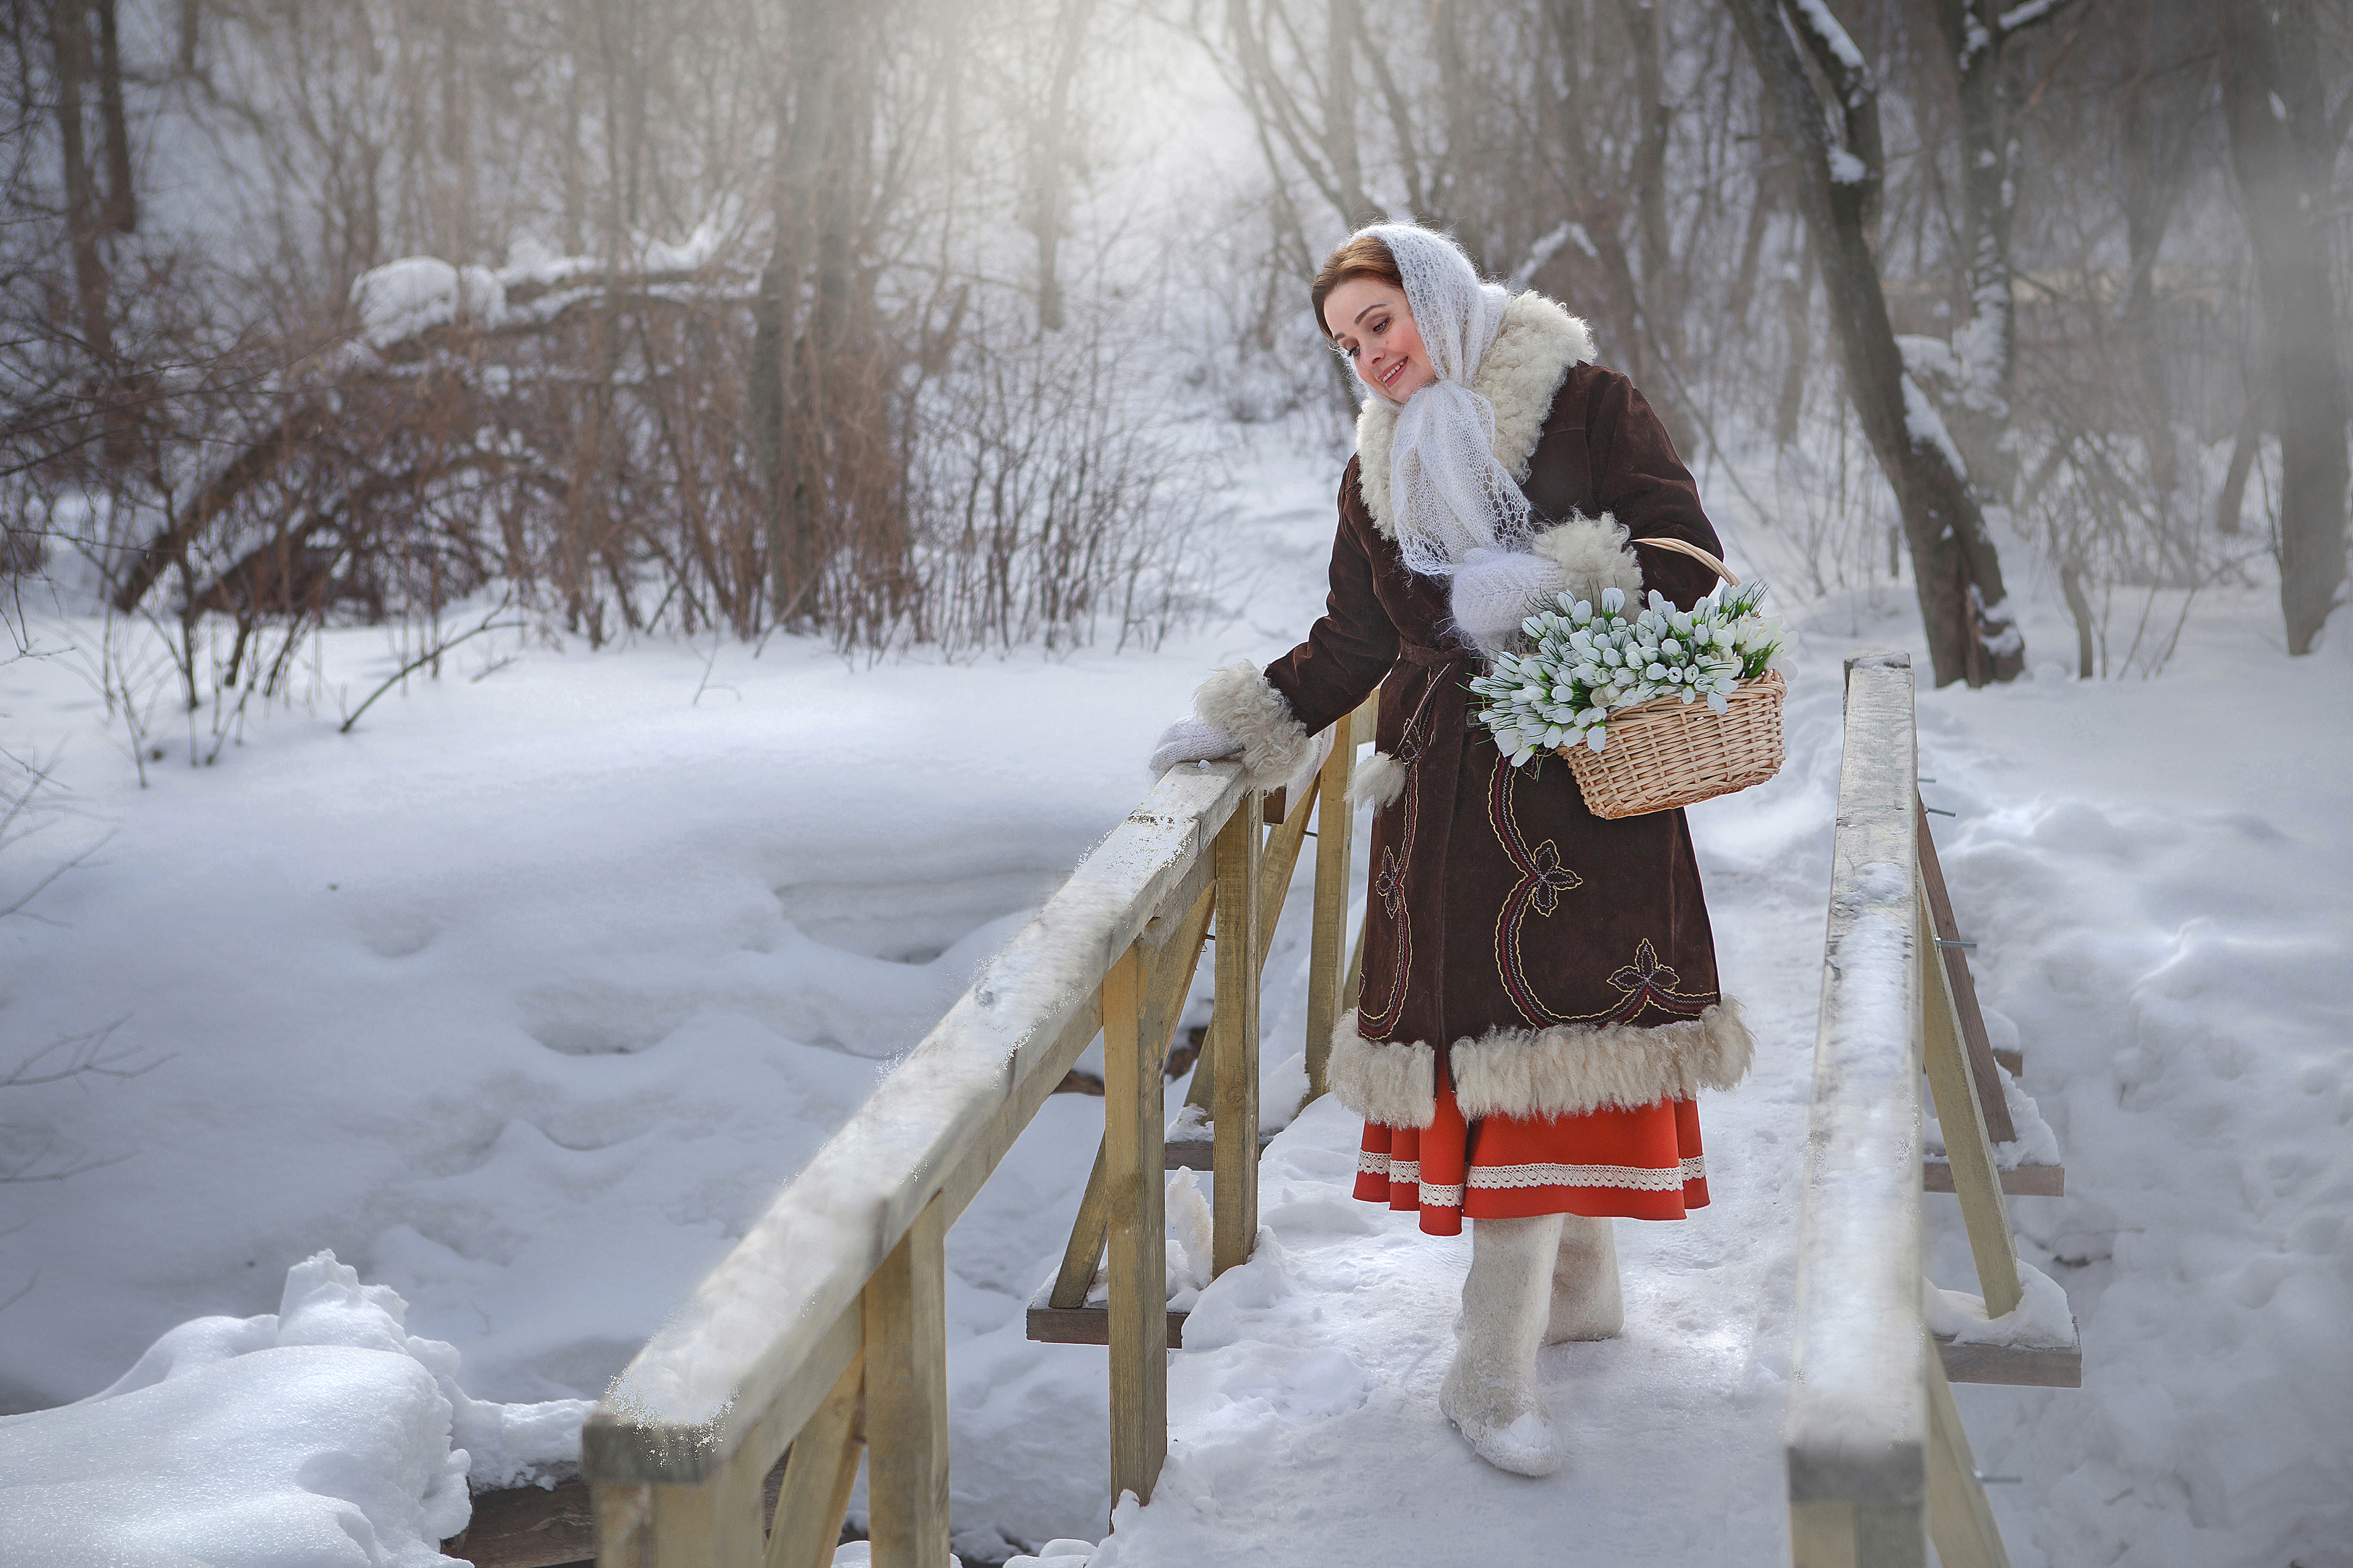 женщина зима природа красота любовь деревня лес снег лукошко платок рукавицы ручеёк фотография сказка, Шепелева Татьяна